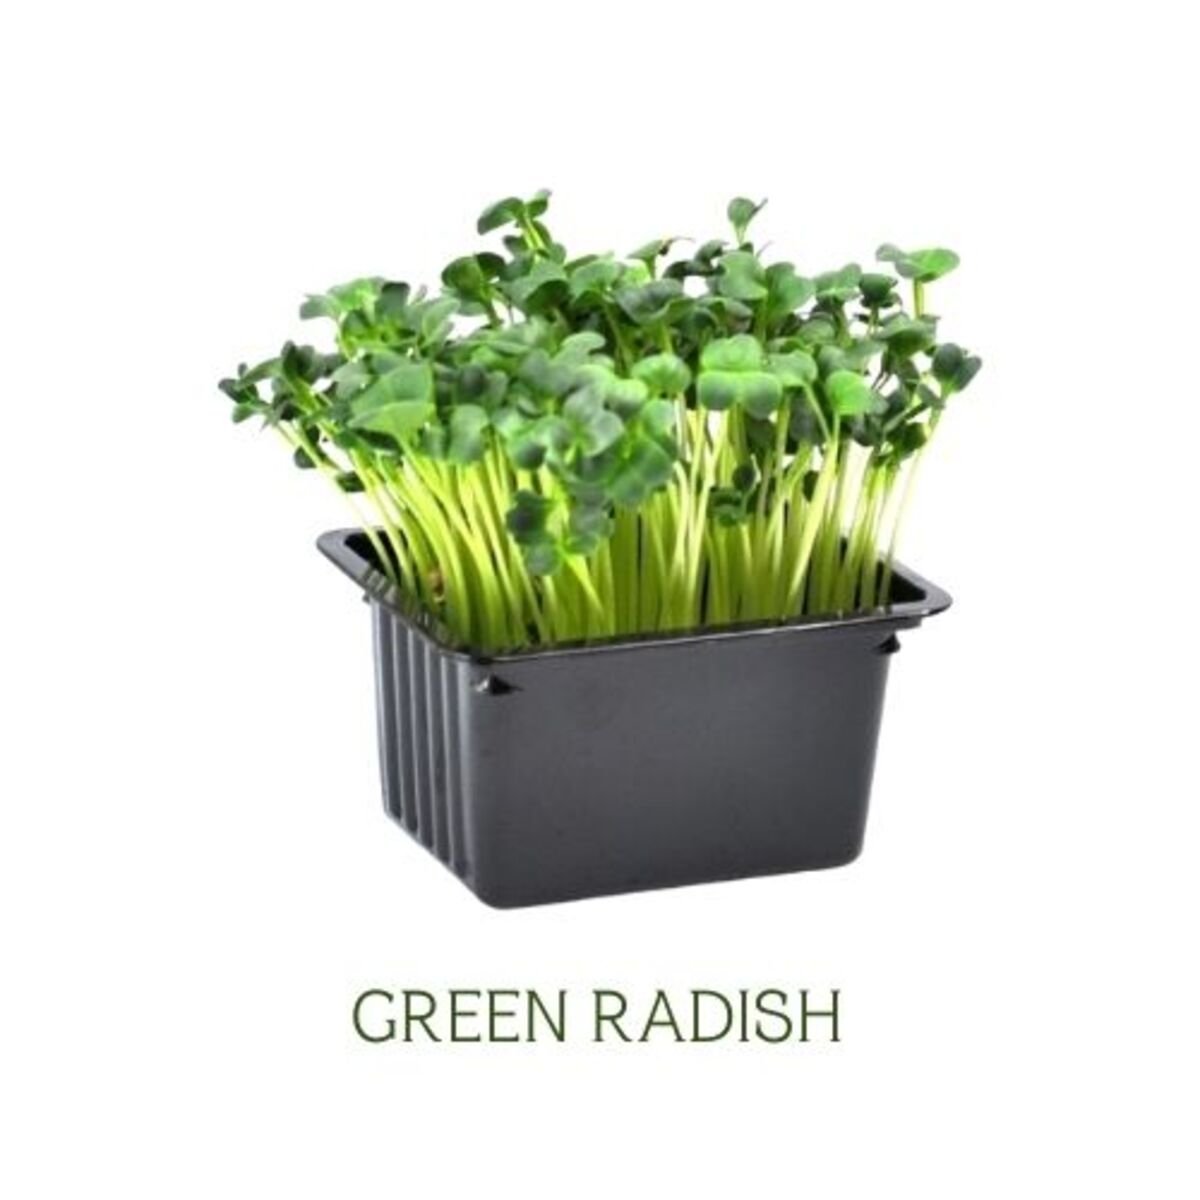 Cress Green Radish UAE 2 pcs